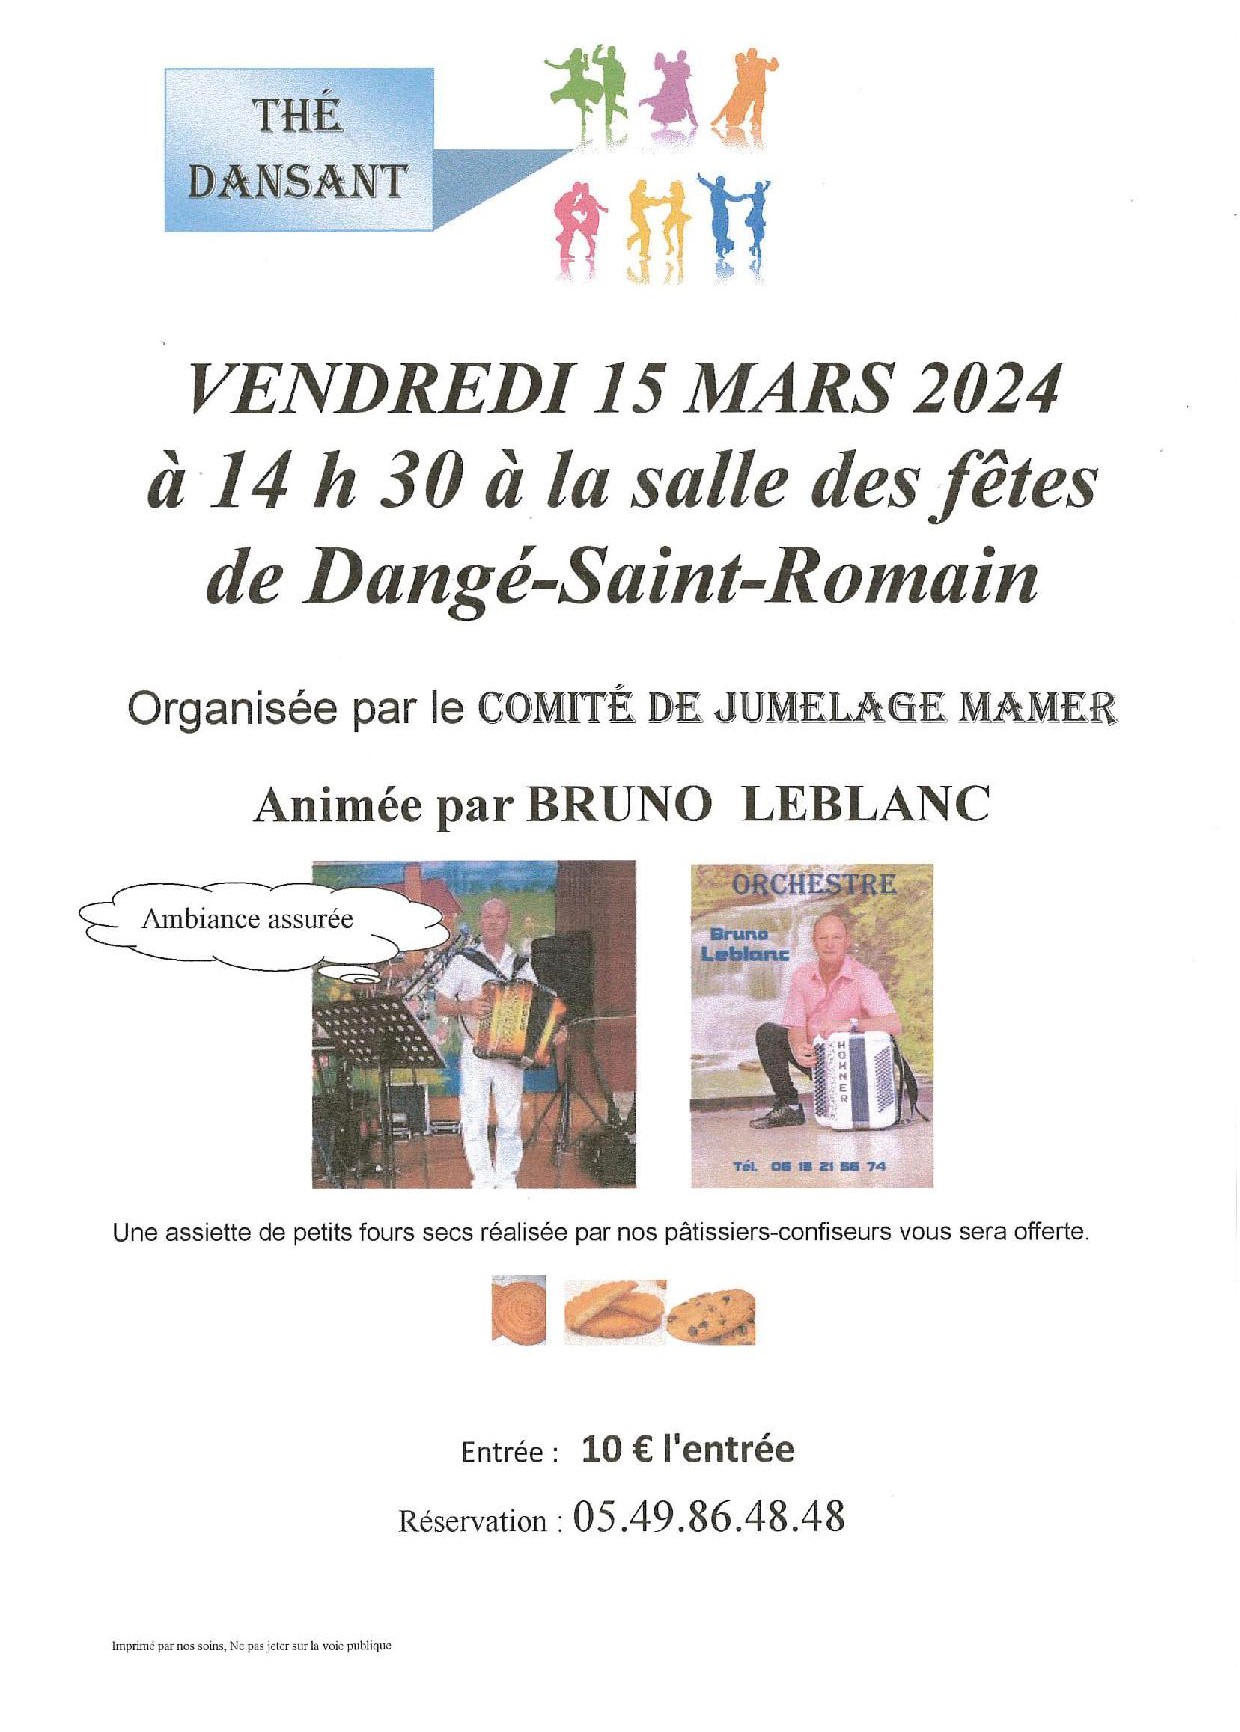 THÉ DANSANT - LE 15/03/2024 - COMITÉ DE JUMELAGE MAMER @ SALLE DES FÊTES